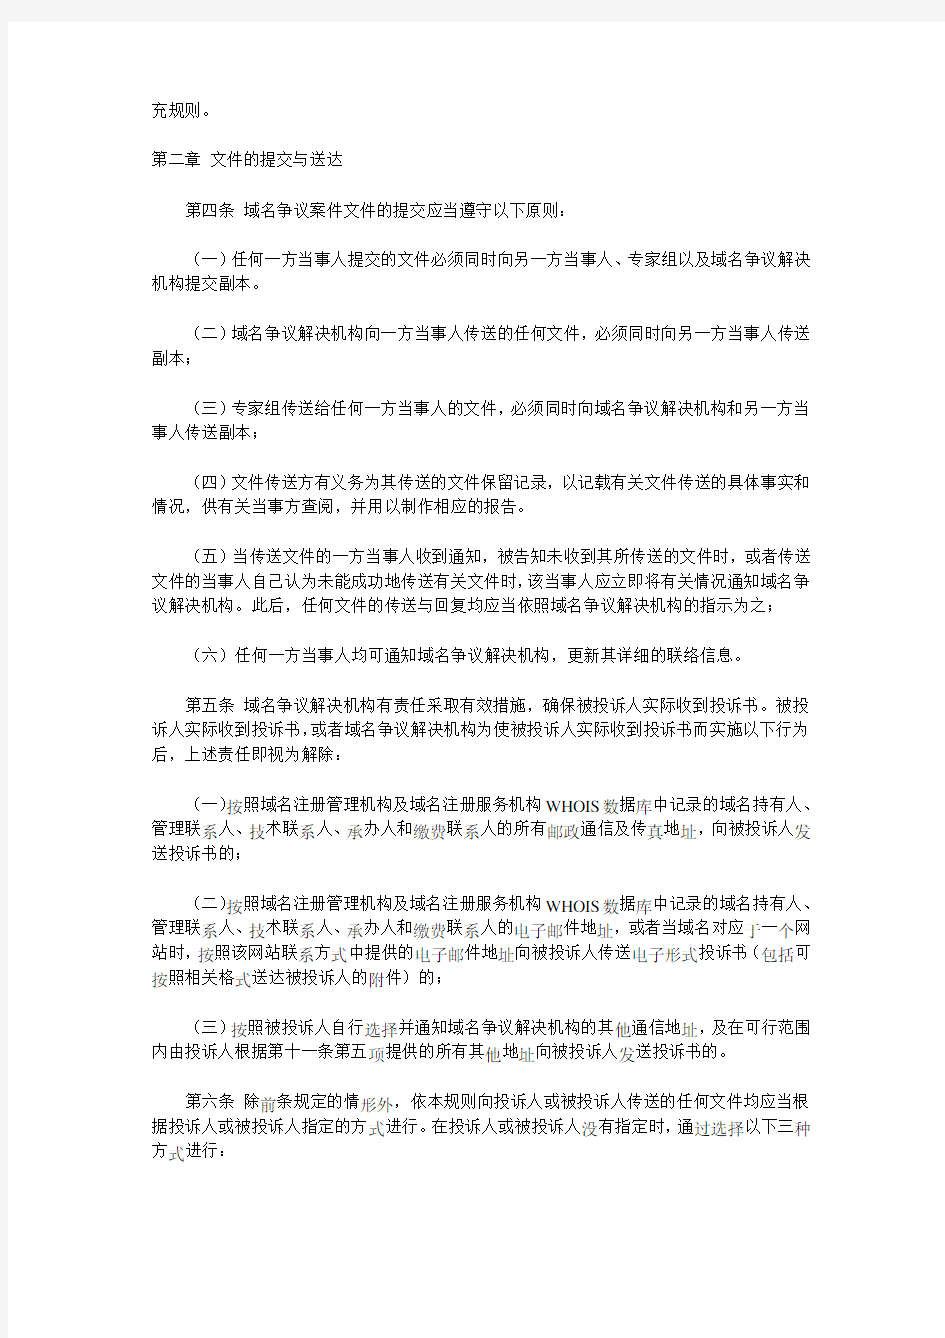 中国互联网络信息中心域名争议解决办法程序规则